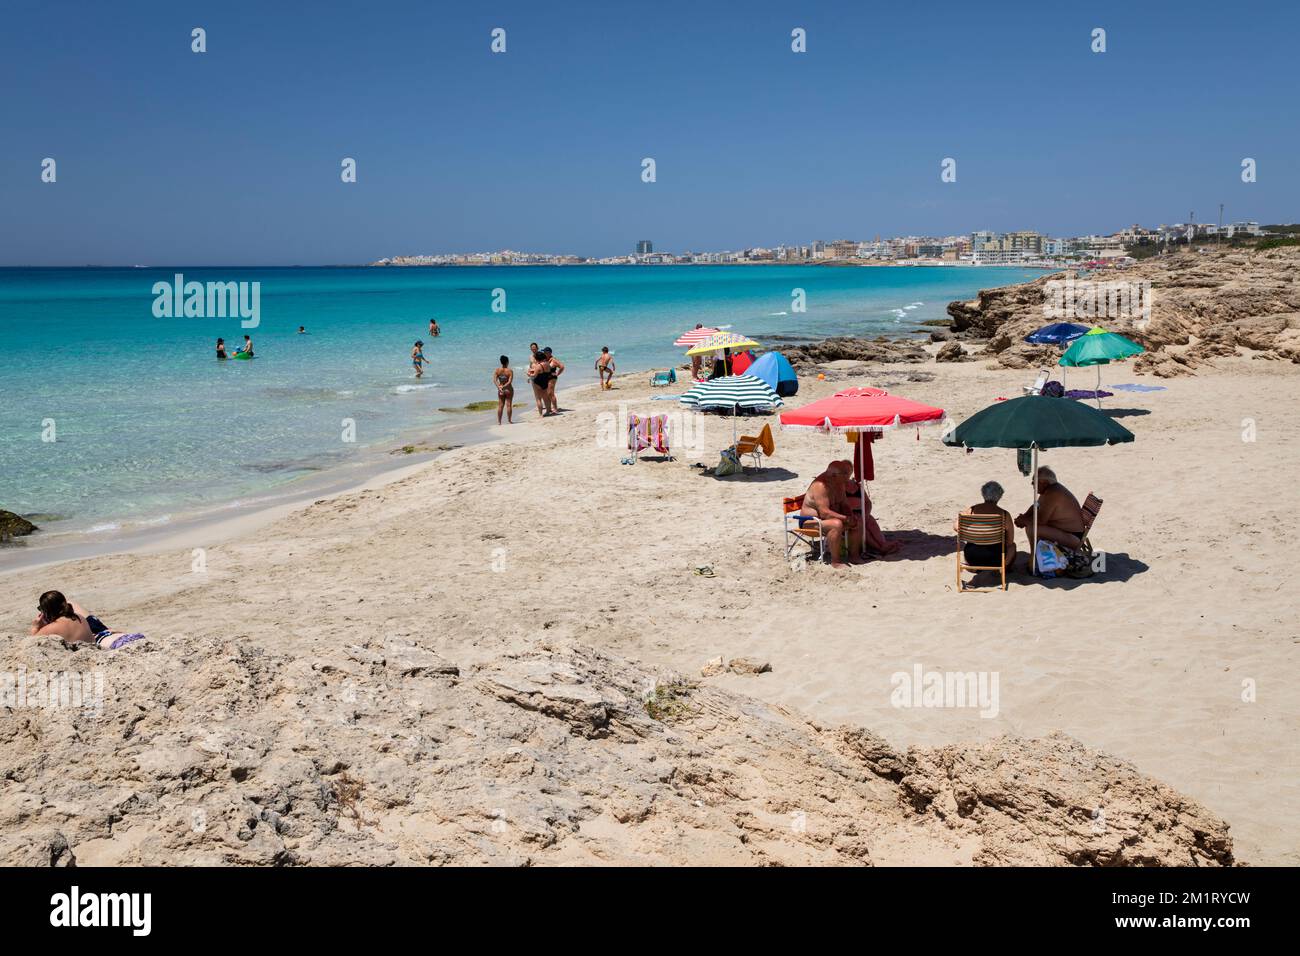 Vue sur la plage de sable blanc et les eaux turquoise de la mer Ionienne, Gallipoli, Puglia, Italie, Europe Banque D'Images